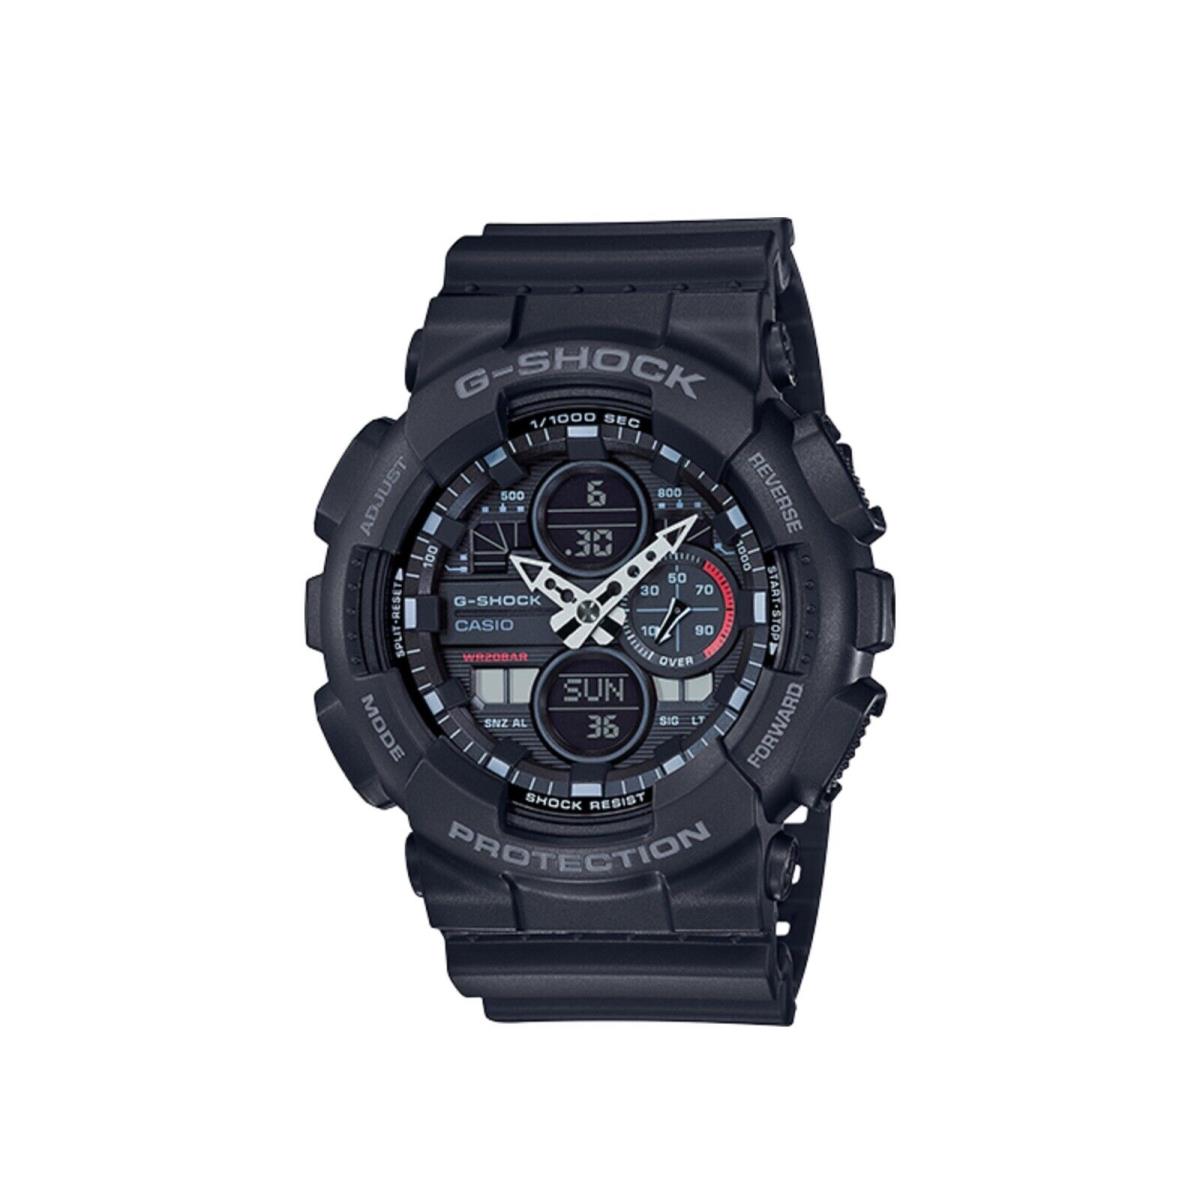 Casio G-shock GA140-1A1 Analog-digital Dial Black / Grey Strap Watch